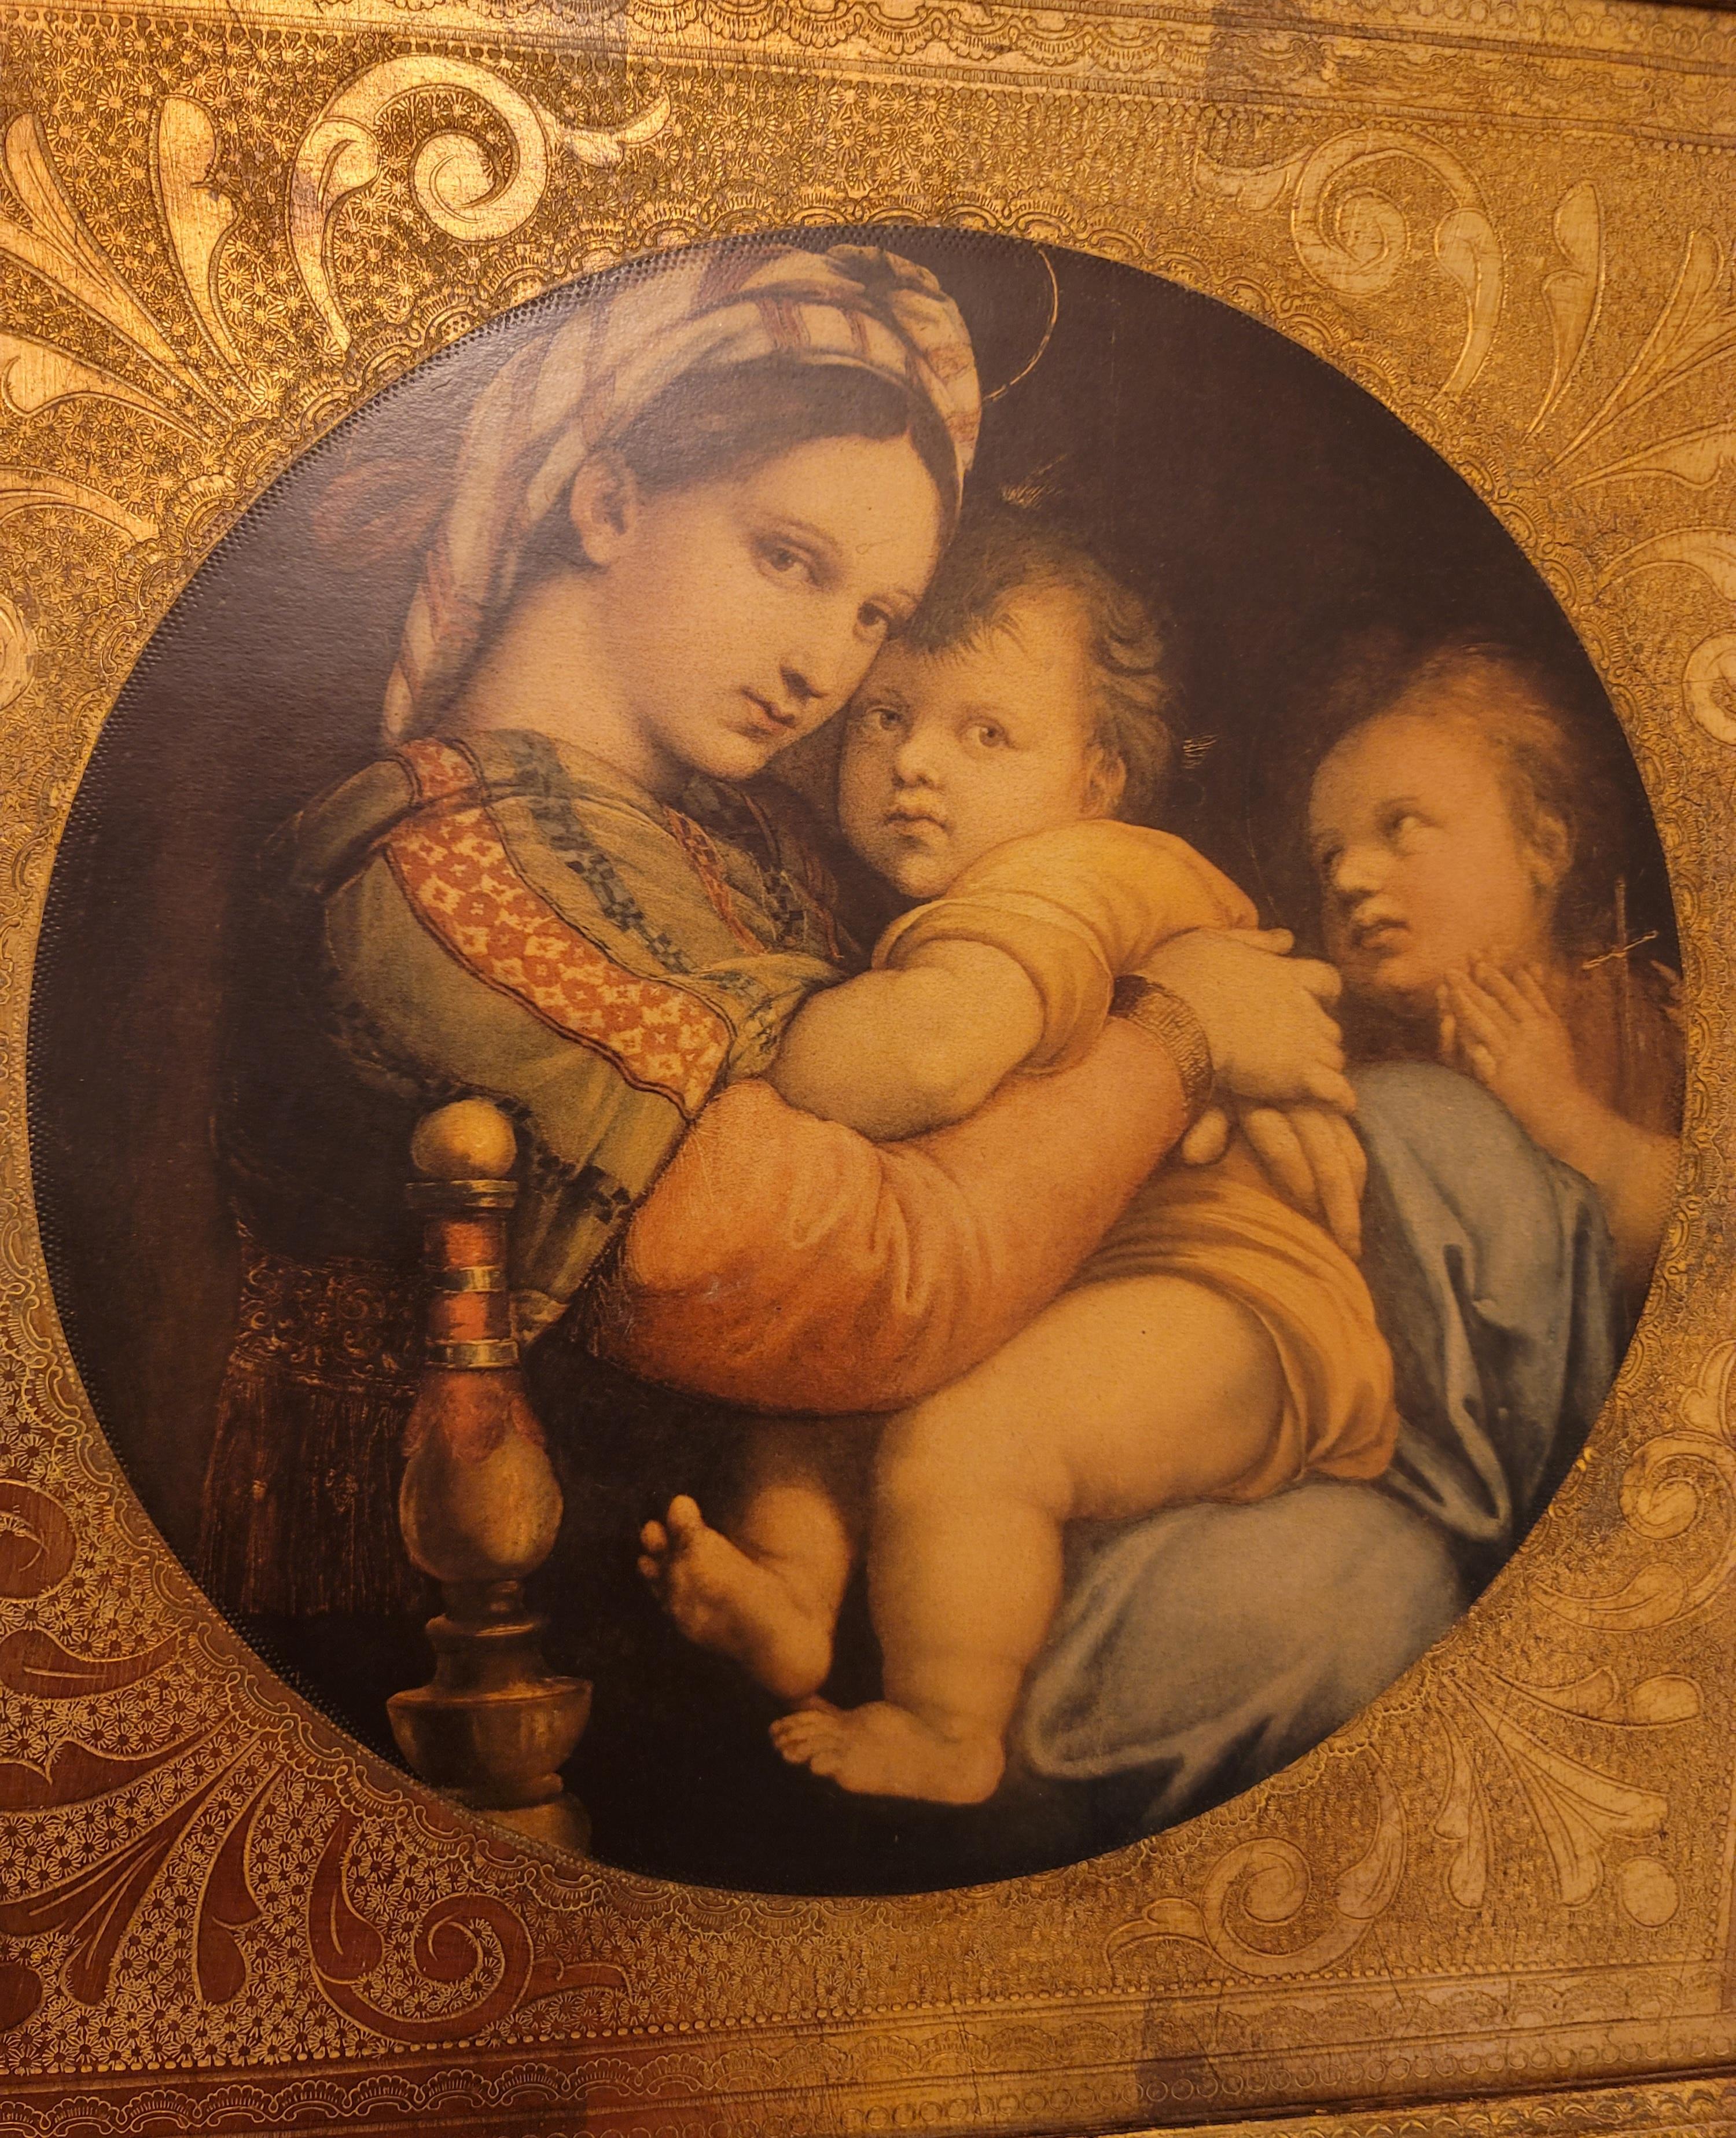 La Madonna Della Sedia, communément appelée la Madone de la chaise, est un tableau de l'artiste italien Raphaël datant de 1513-1514. Elle est actuellement conservée dans la collection du Palazzo Pitti, à Florence.
Le tableau représente Marie, la